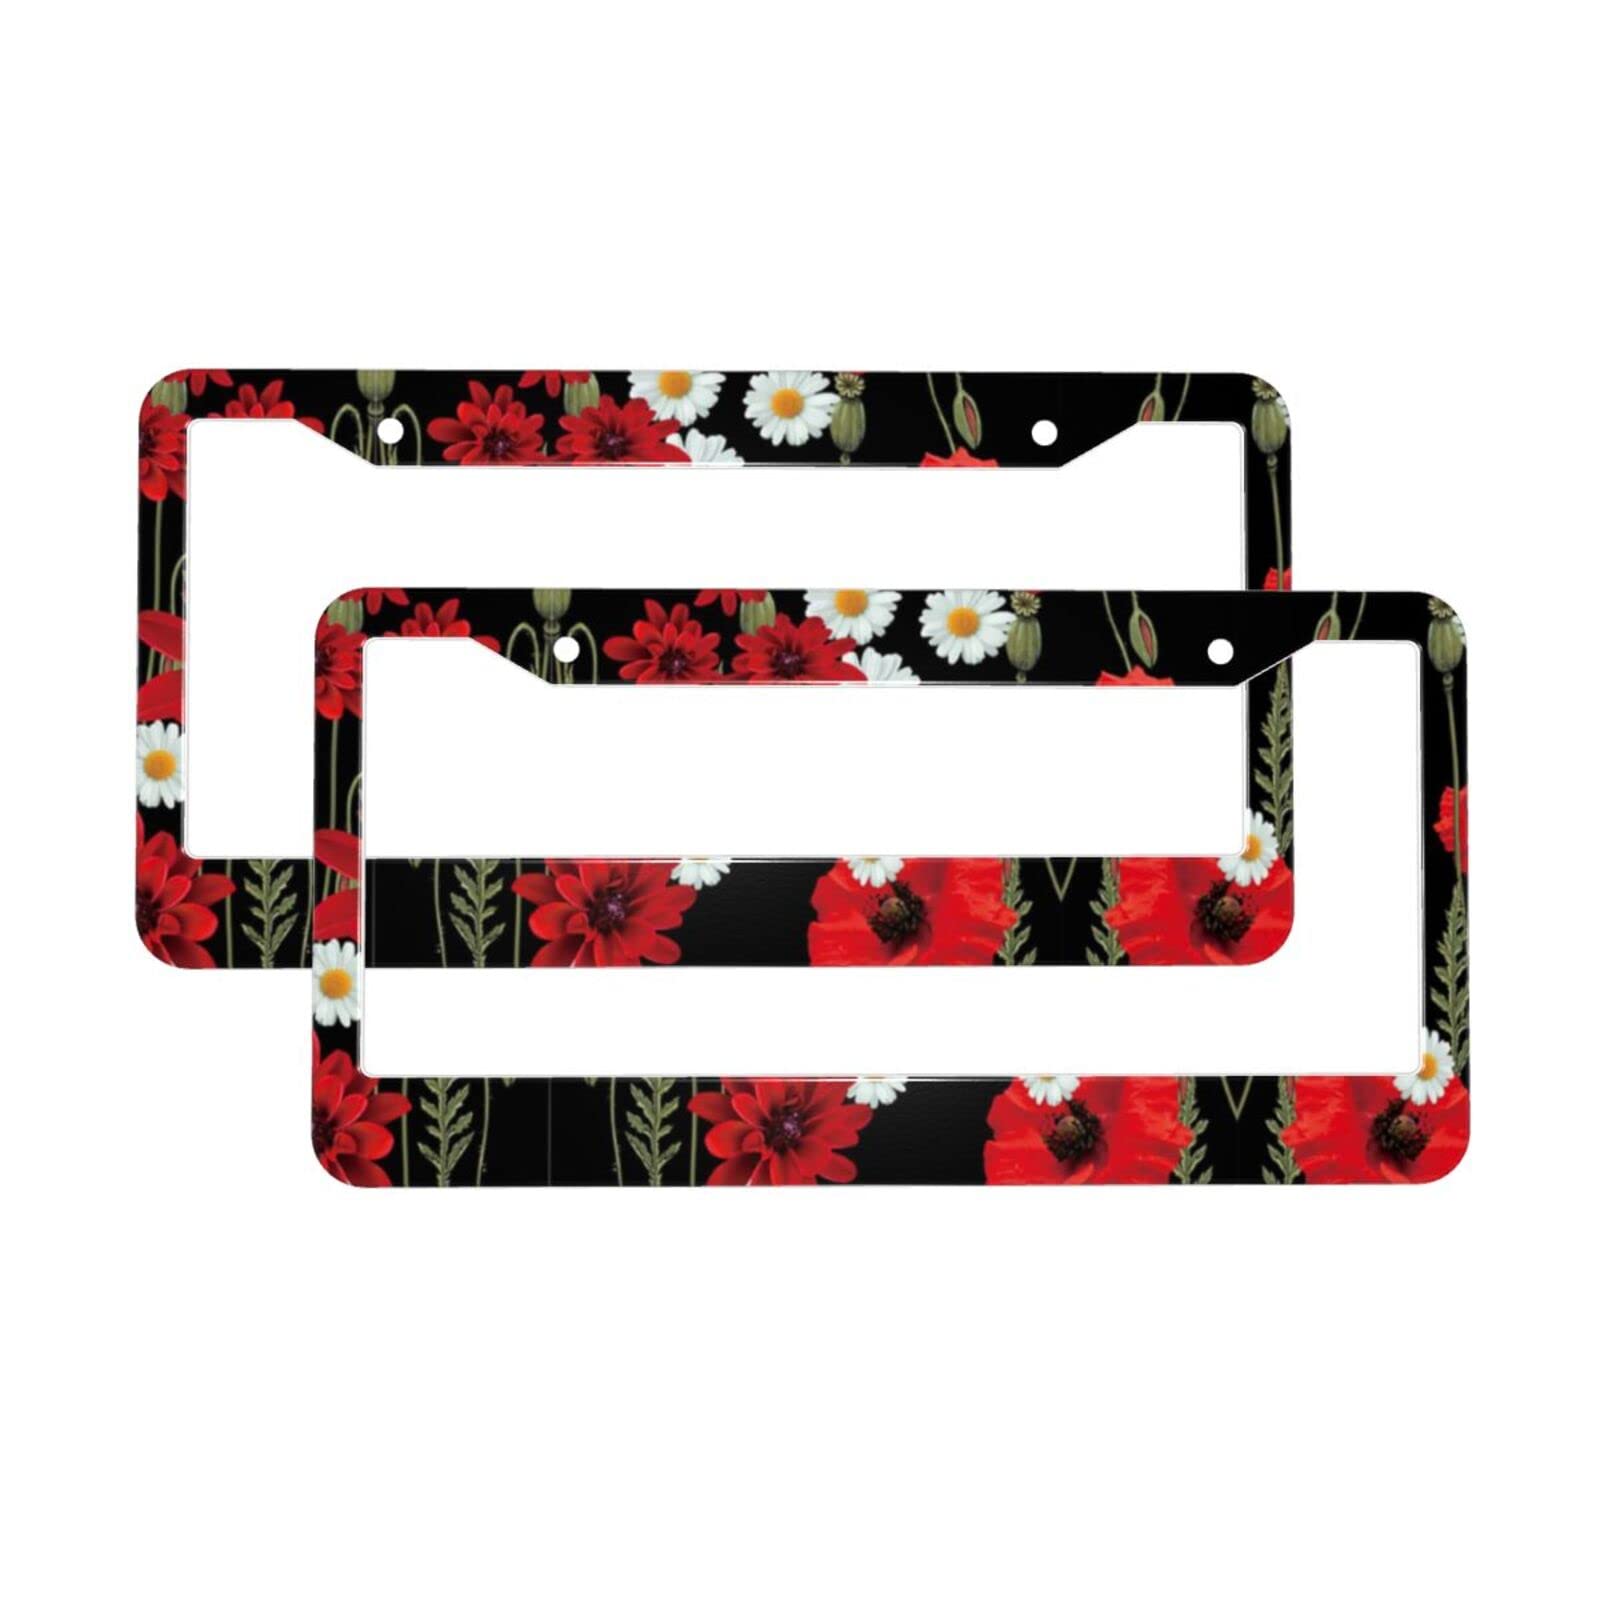 Nummernschild-Rahmen mit roten Blumen und weißen Gänseblümchen, universal, rostfrei, wetterfest, Aluminium, 2 Stück von BURGHR